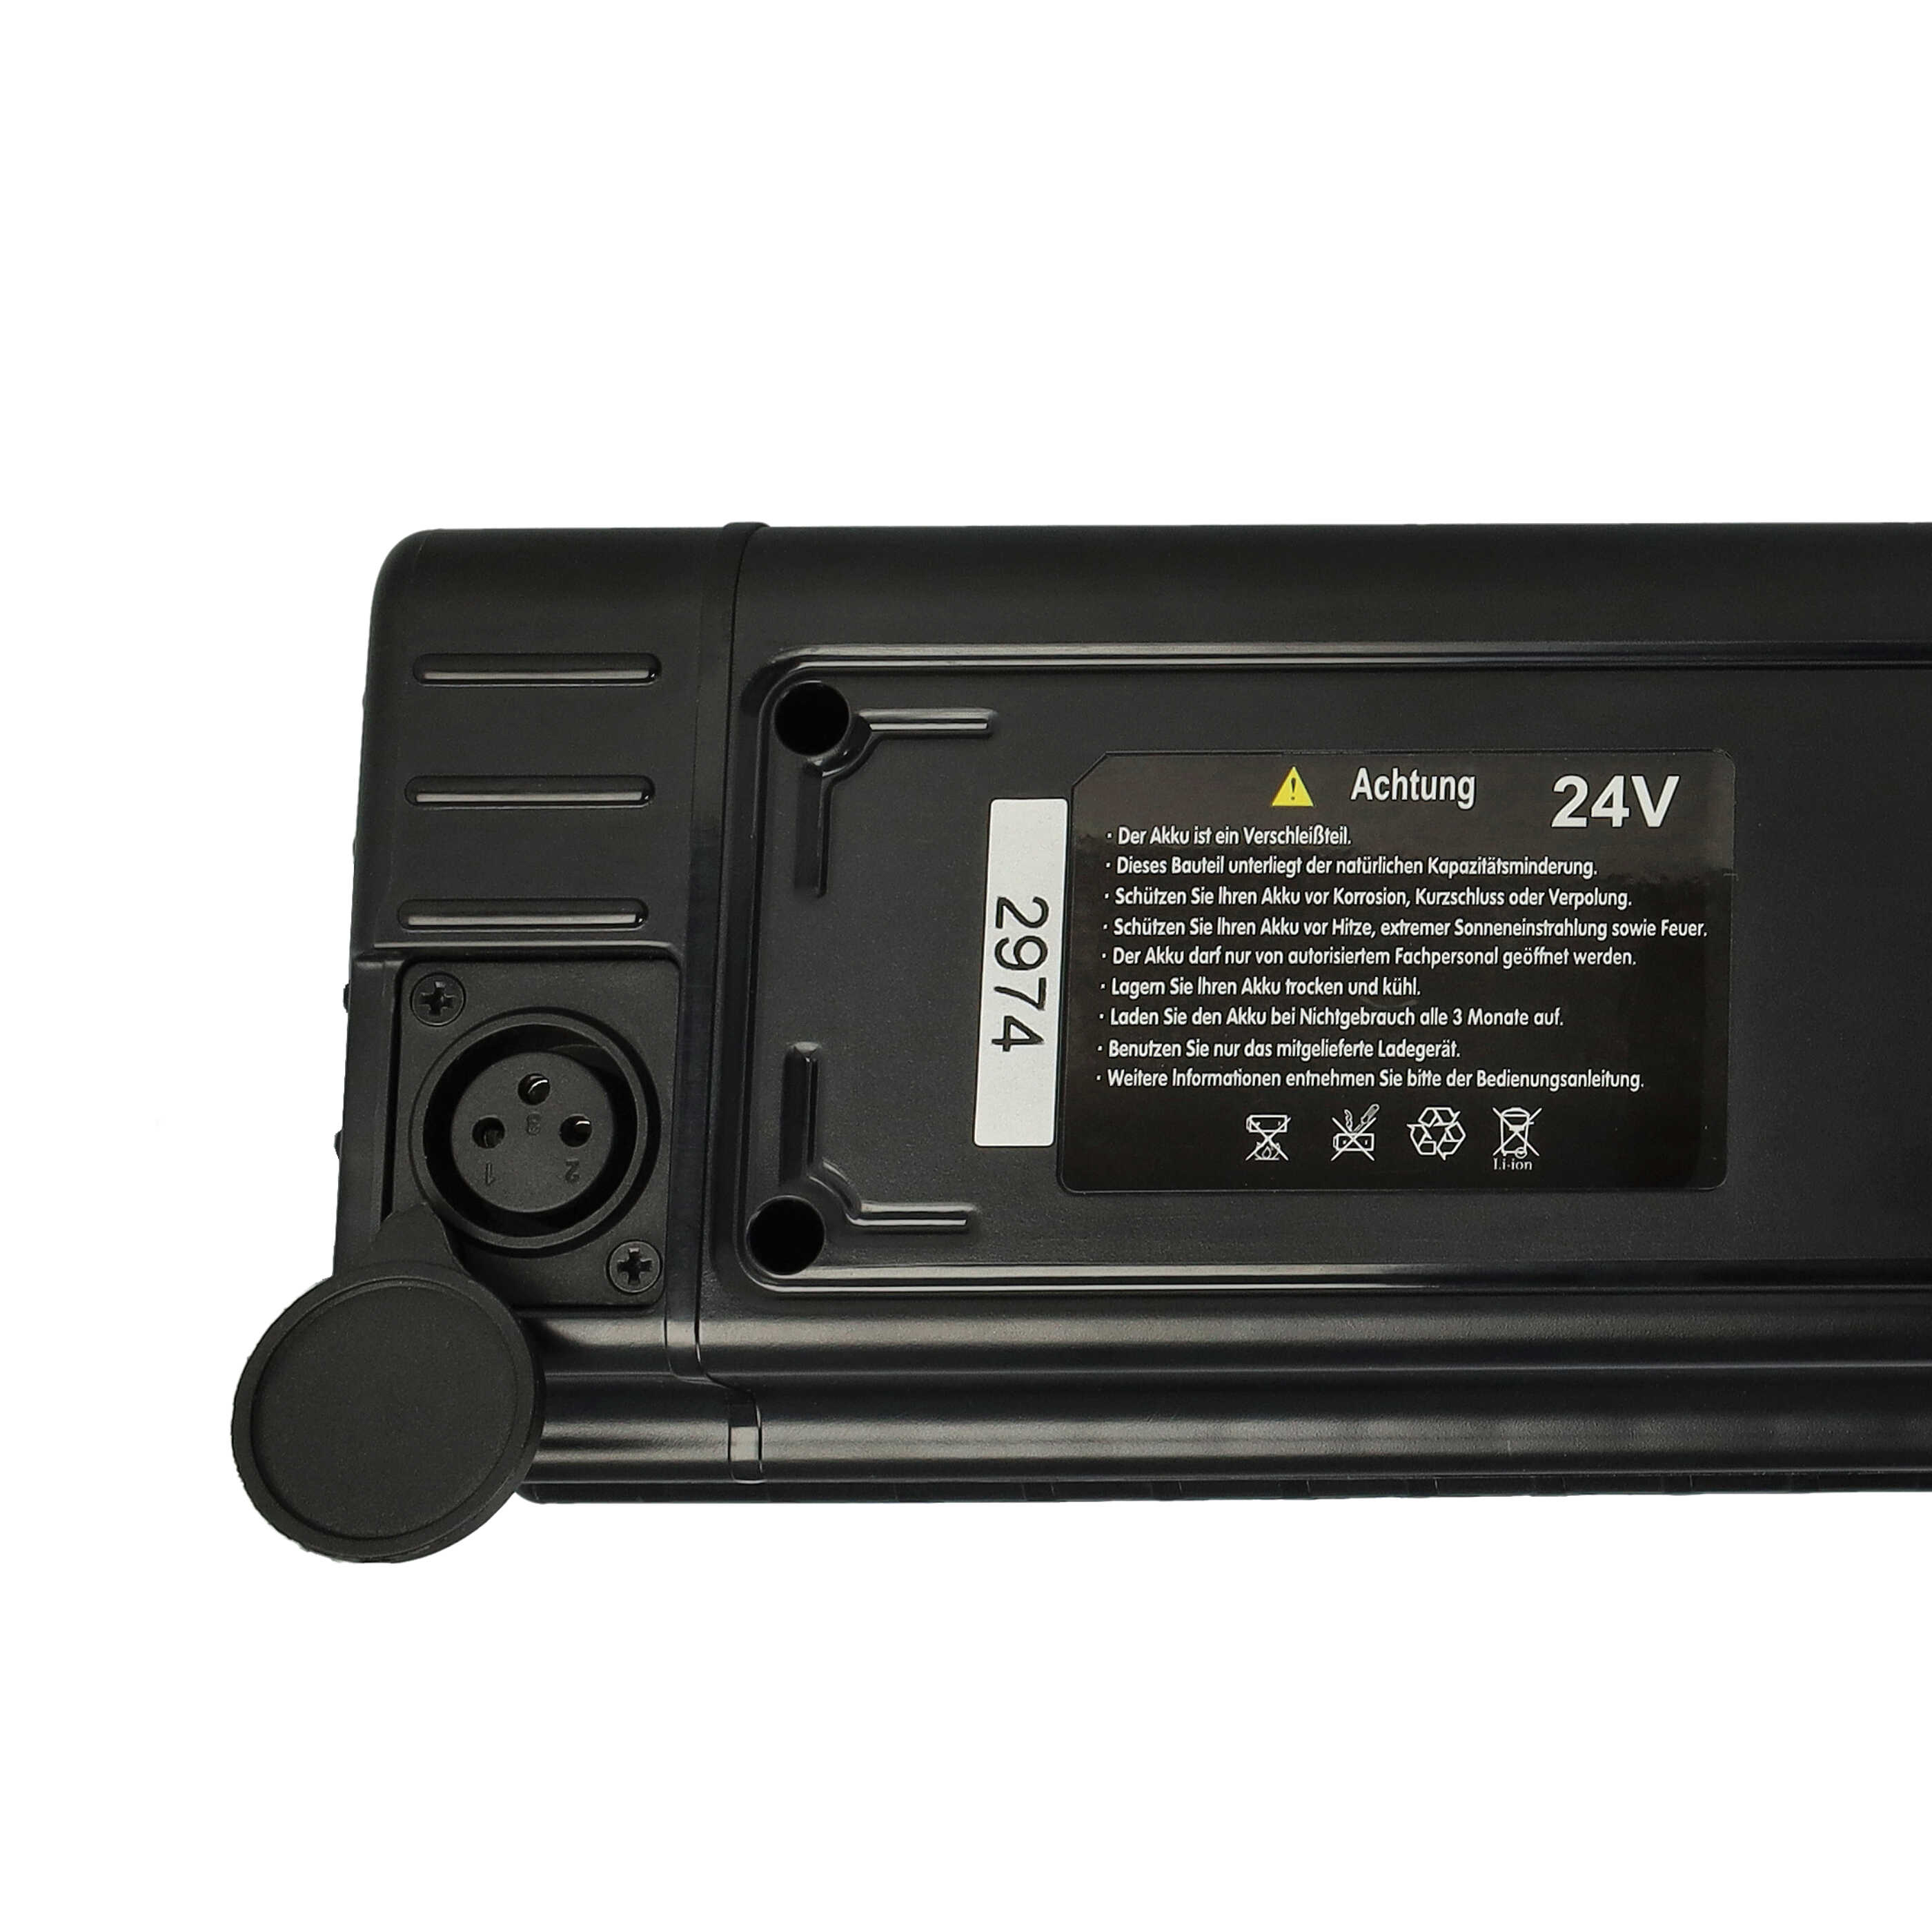 Batería reemplaza Samsung SDI 24V para bicicleta eléctrica Prophete - 11,6 Ah 24 V Li-Ion negro